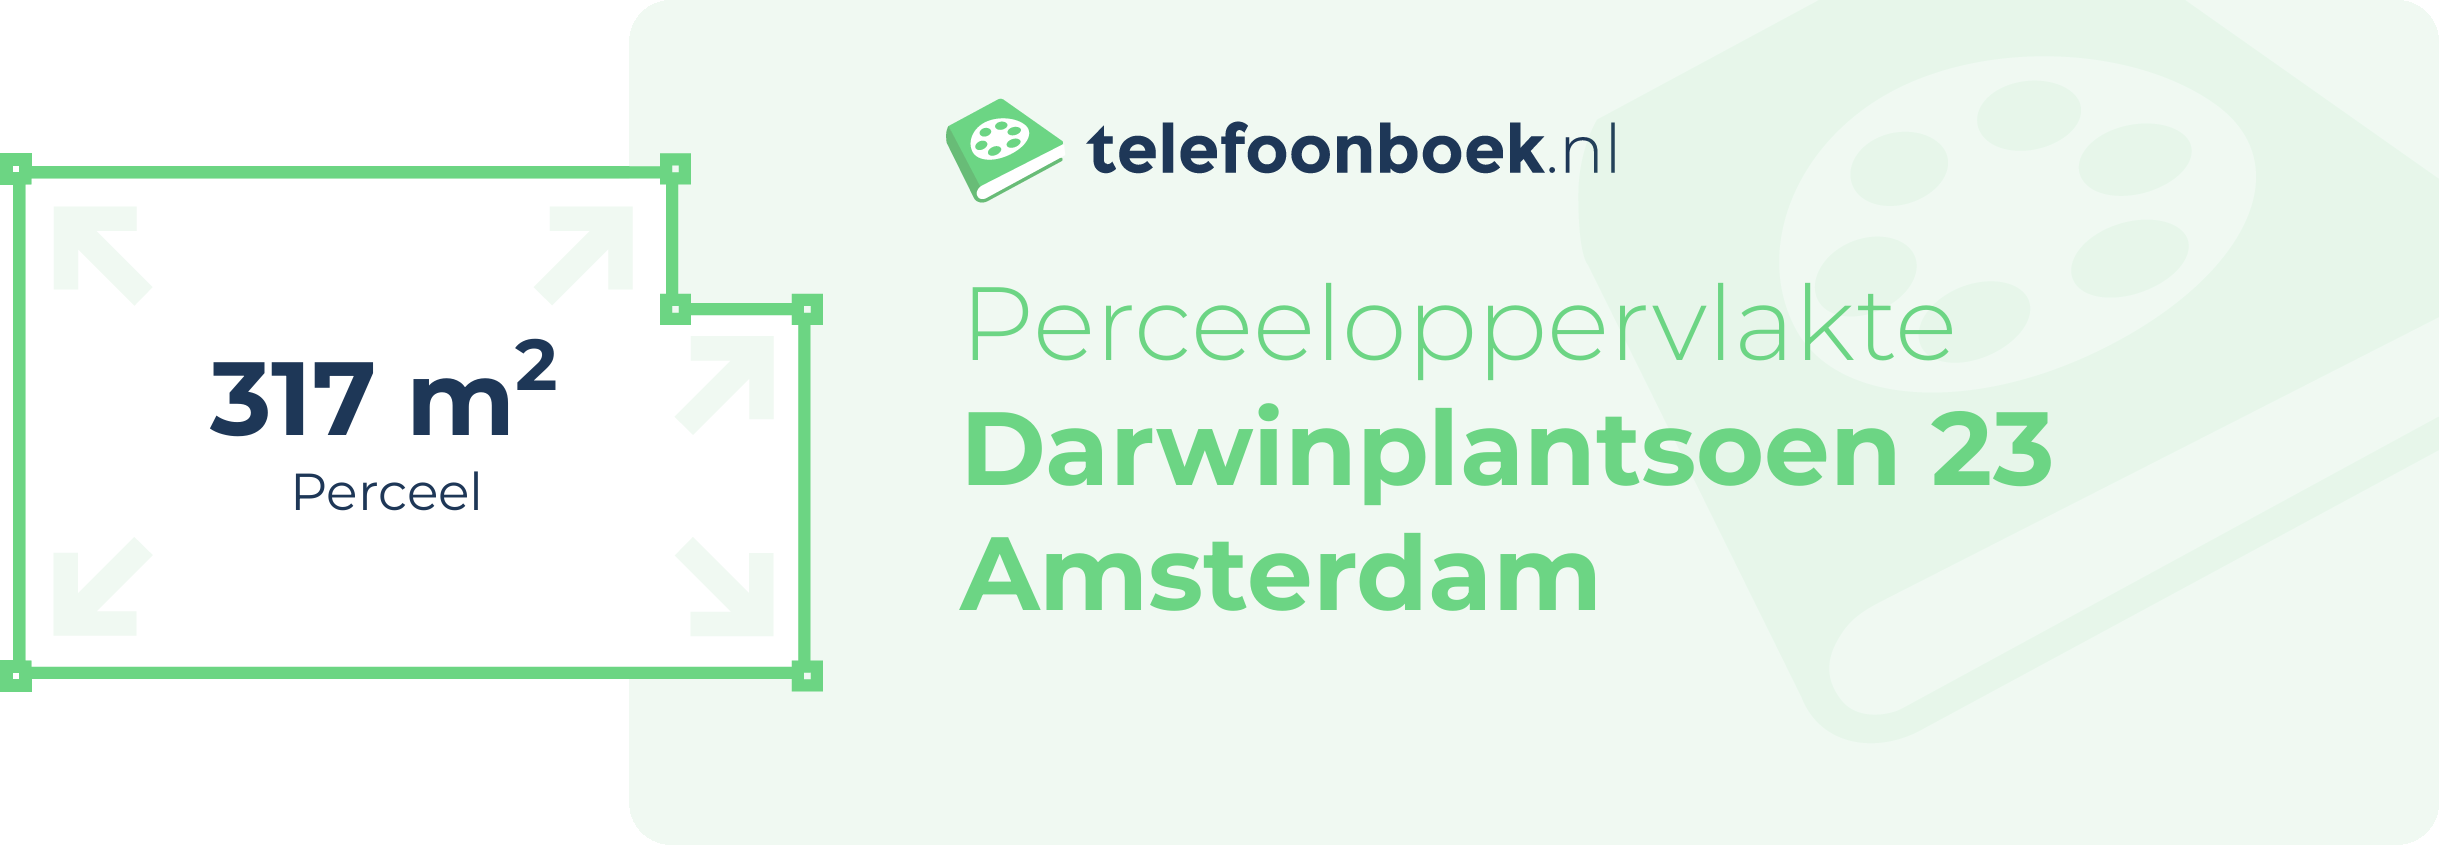 Perceeloppervlakte Darwinplantsoen 23 Amsterdam